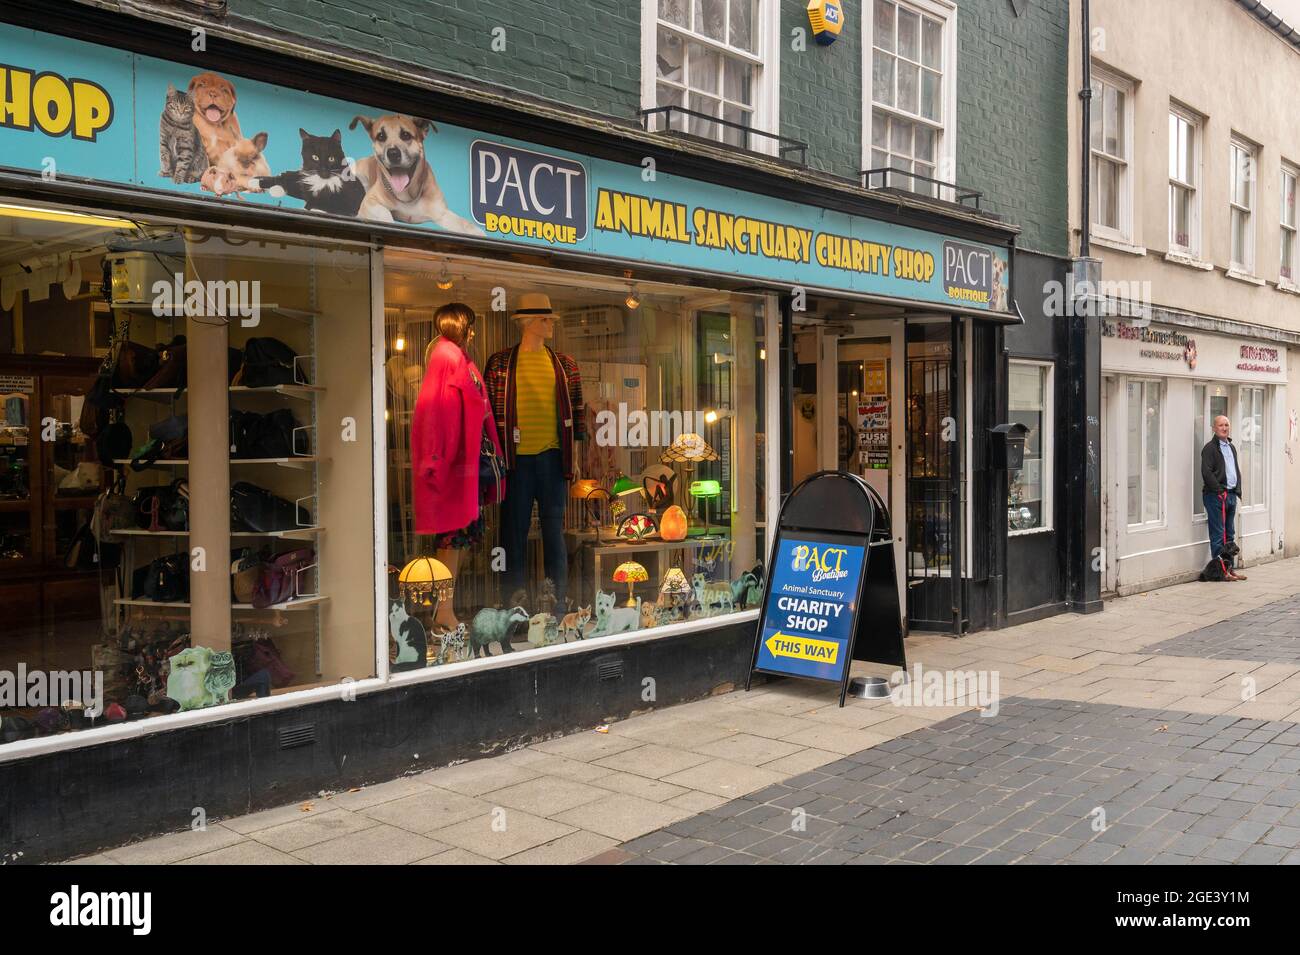 Pact boutique, Animal santuario negozio di beneficenza in dove Street Norwich Foto Stock